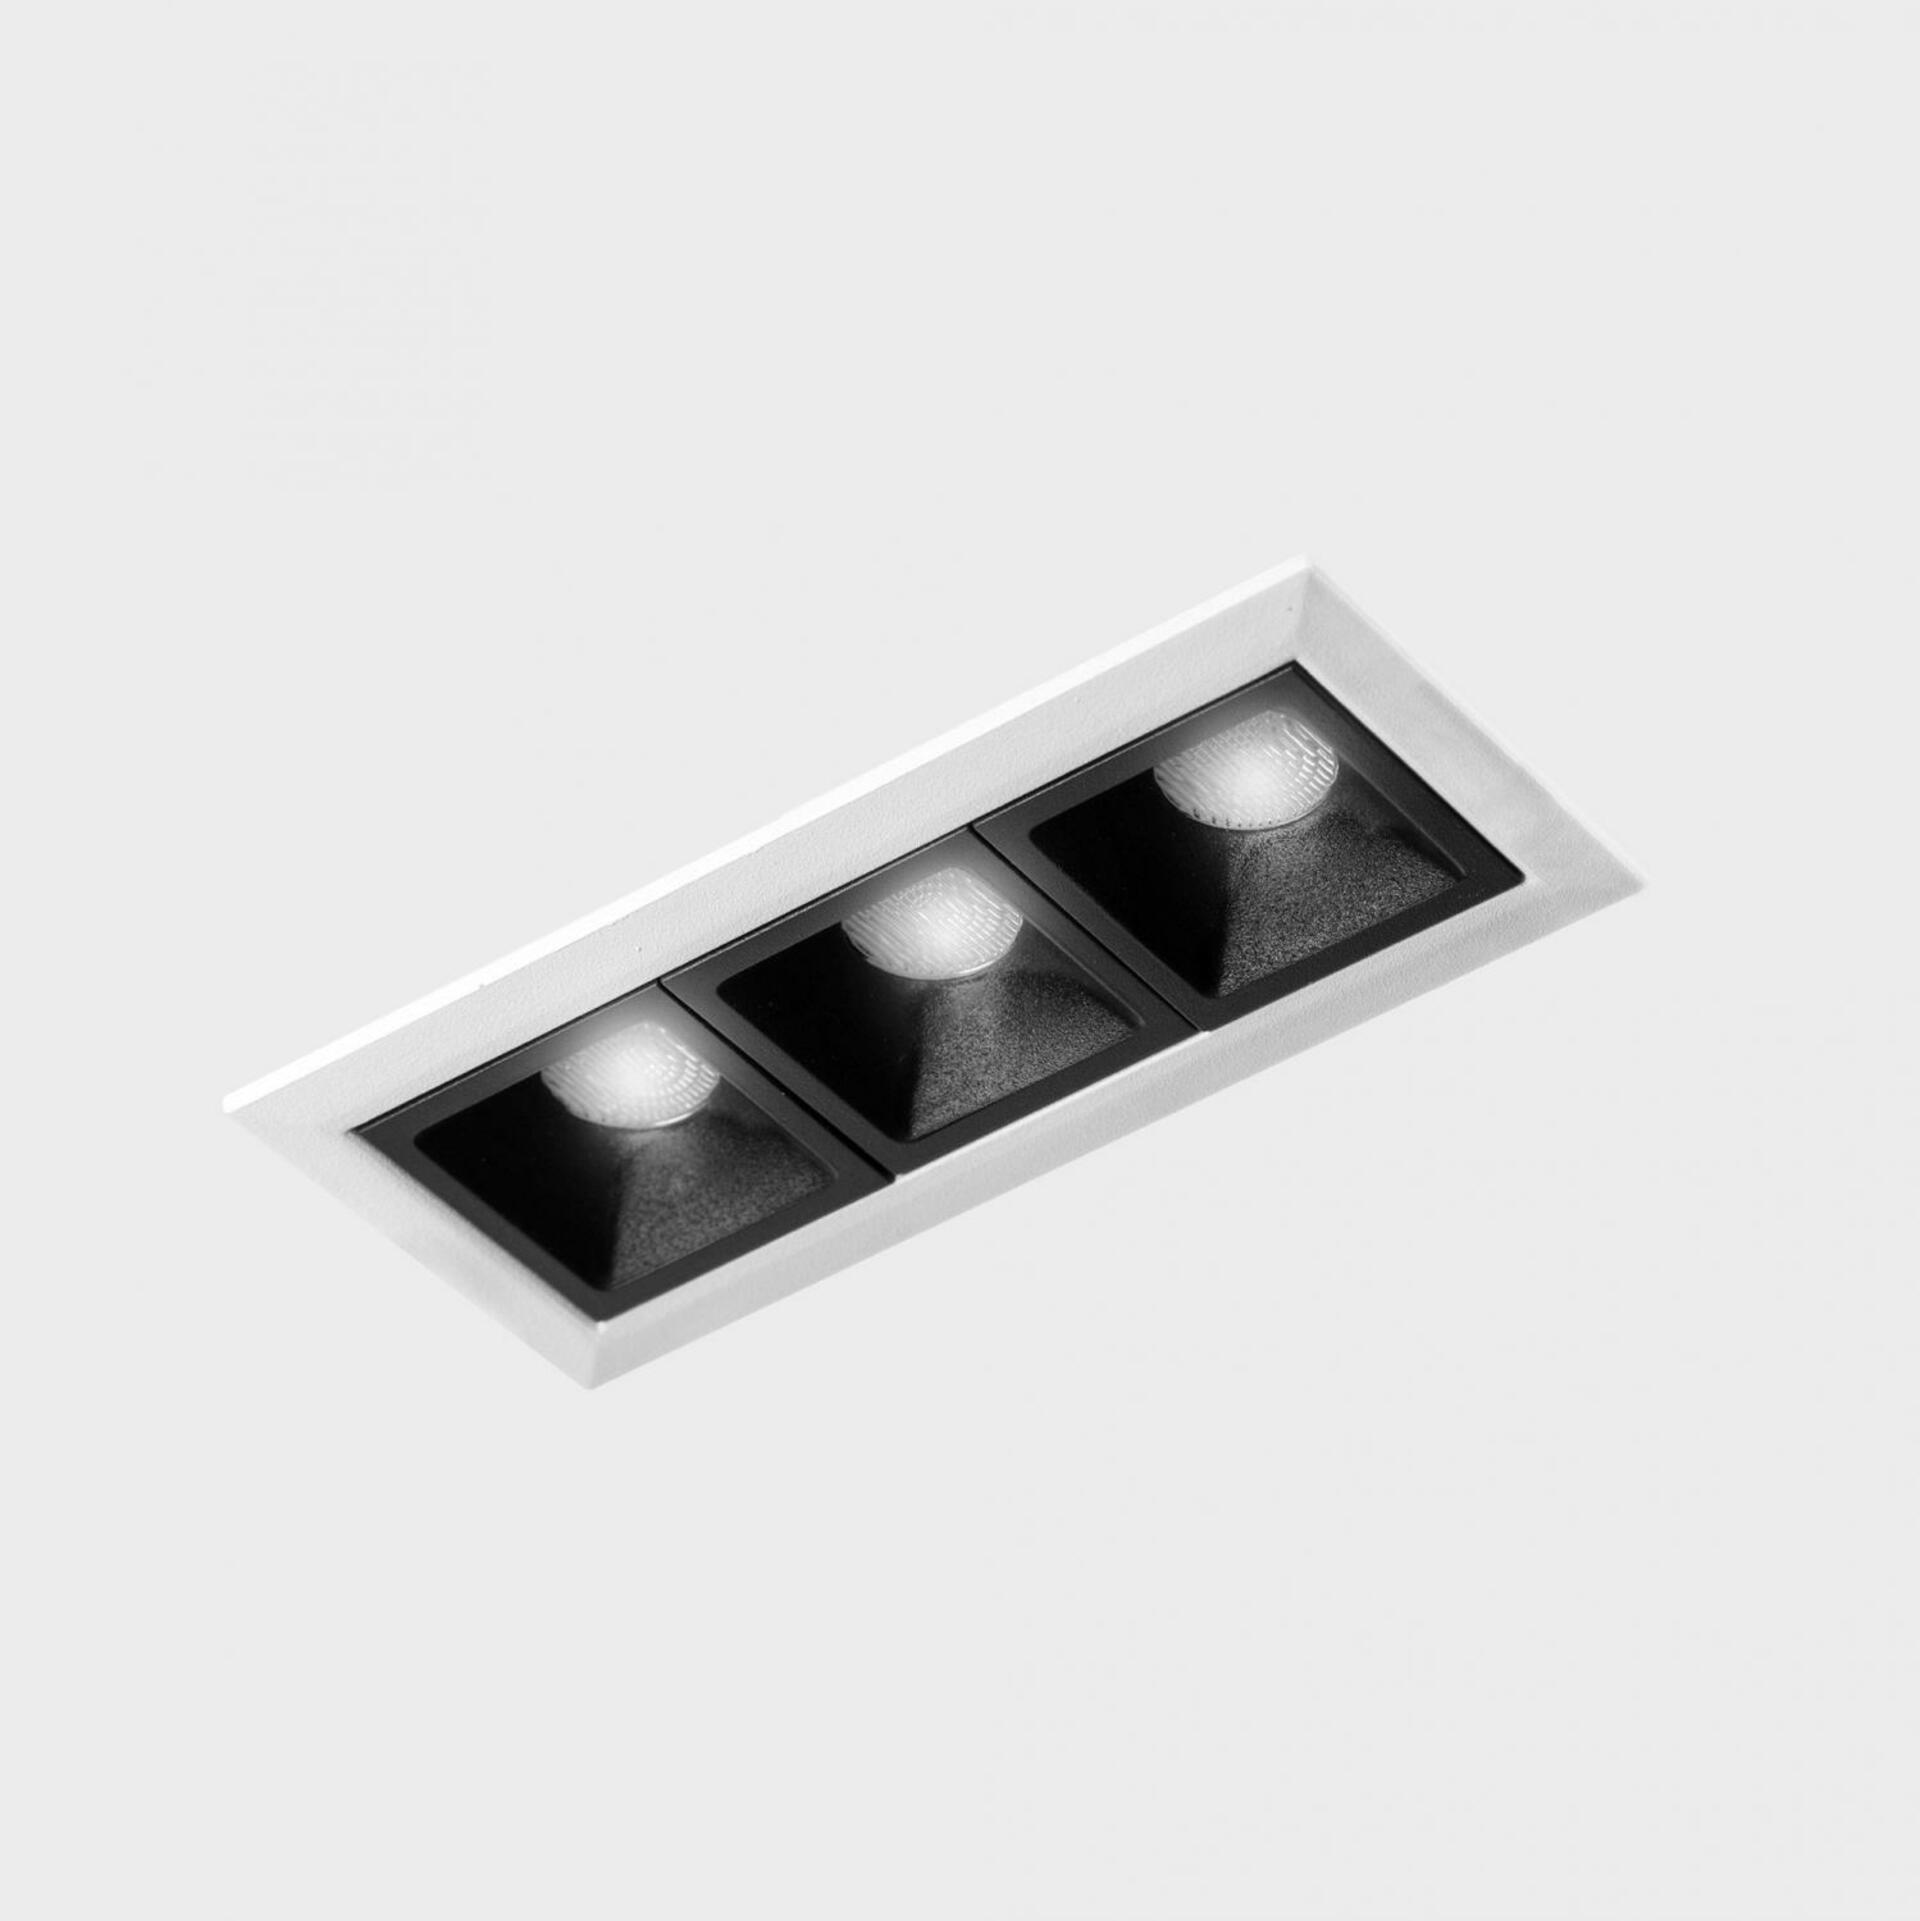 KOHL LIGHTING KOHL-Lighting NSES zapuštěné svítidlo s rámečkem 105x45 mm bílá-černá 6 W CRI 90 3000K DALI